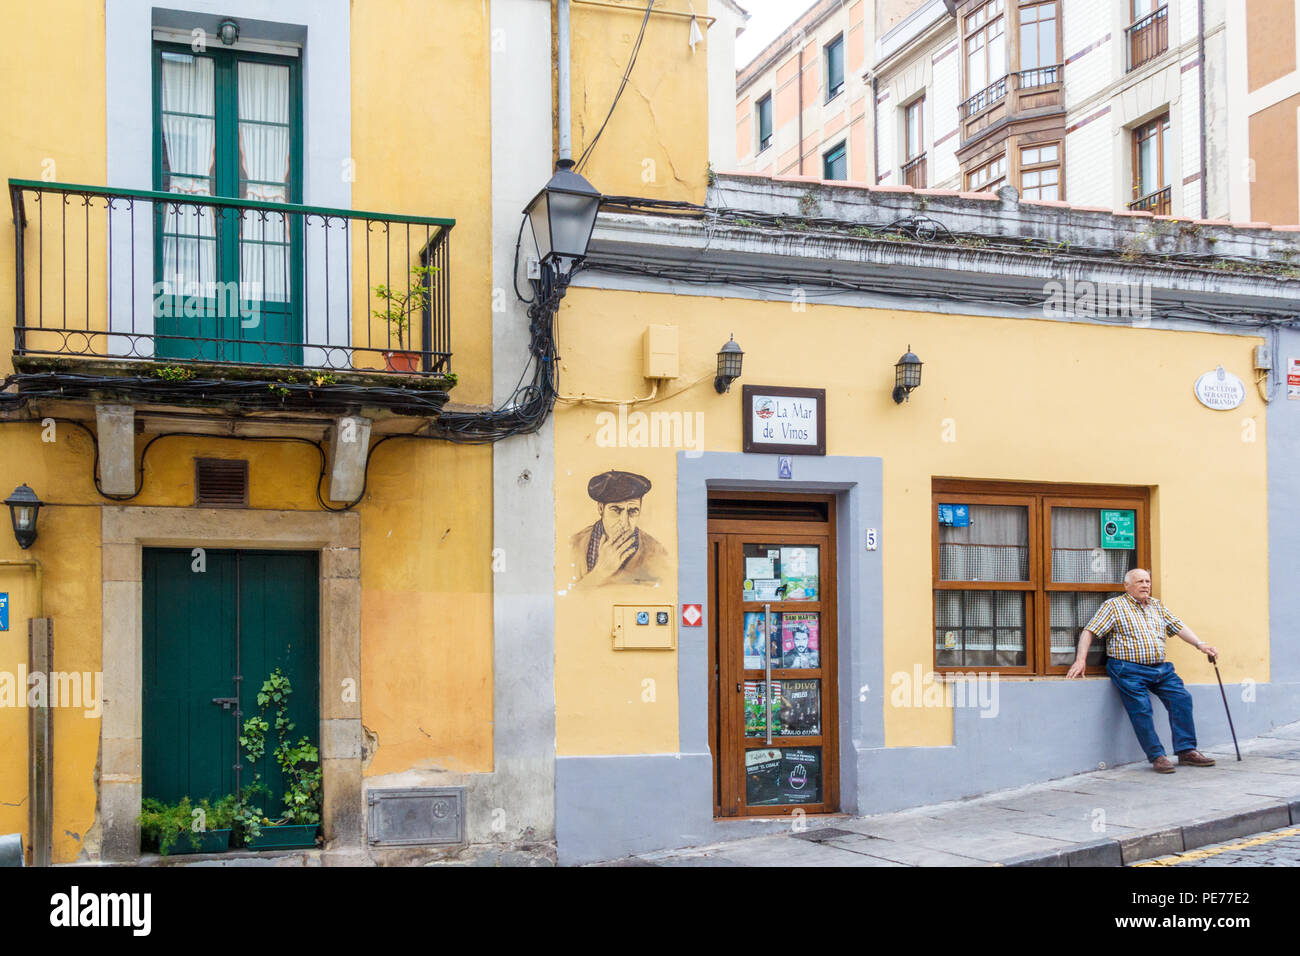 Gijón, España - 6 de julio de 2018: el hombre con bastón descansa después de caminar cuesta arriba en el antiguo barrio de pescadores. La zona es conocida como Cimadevilla Foto de stock